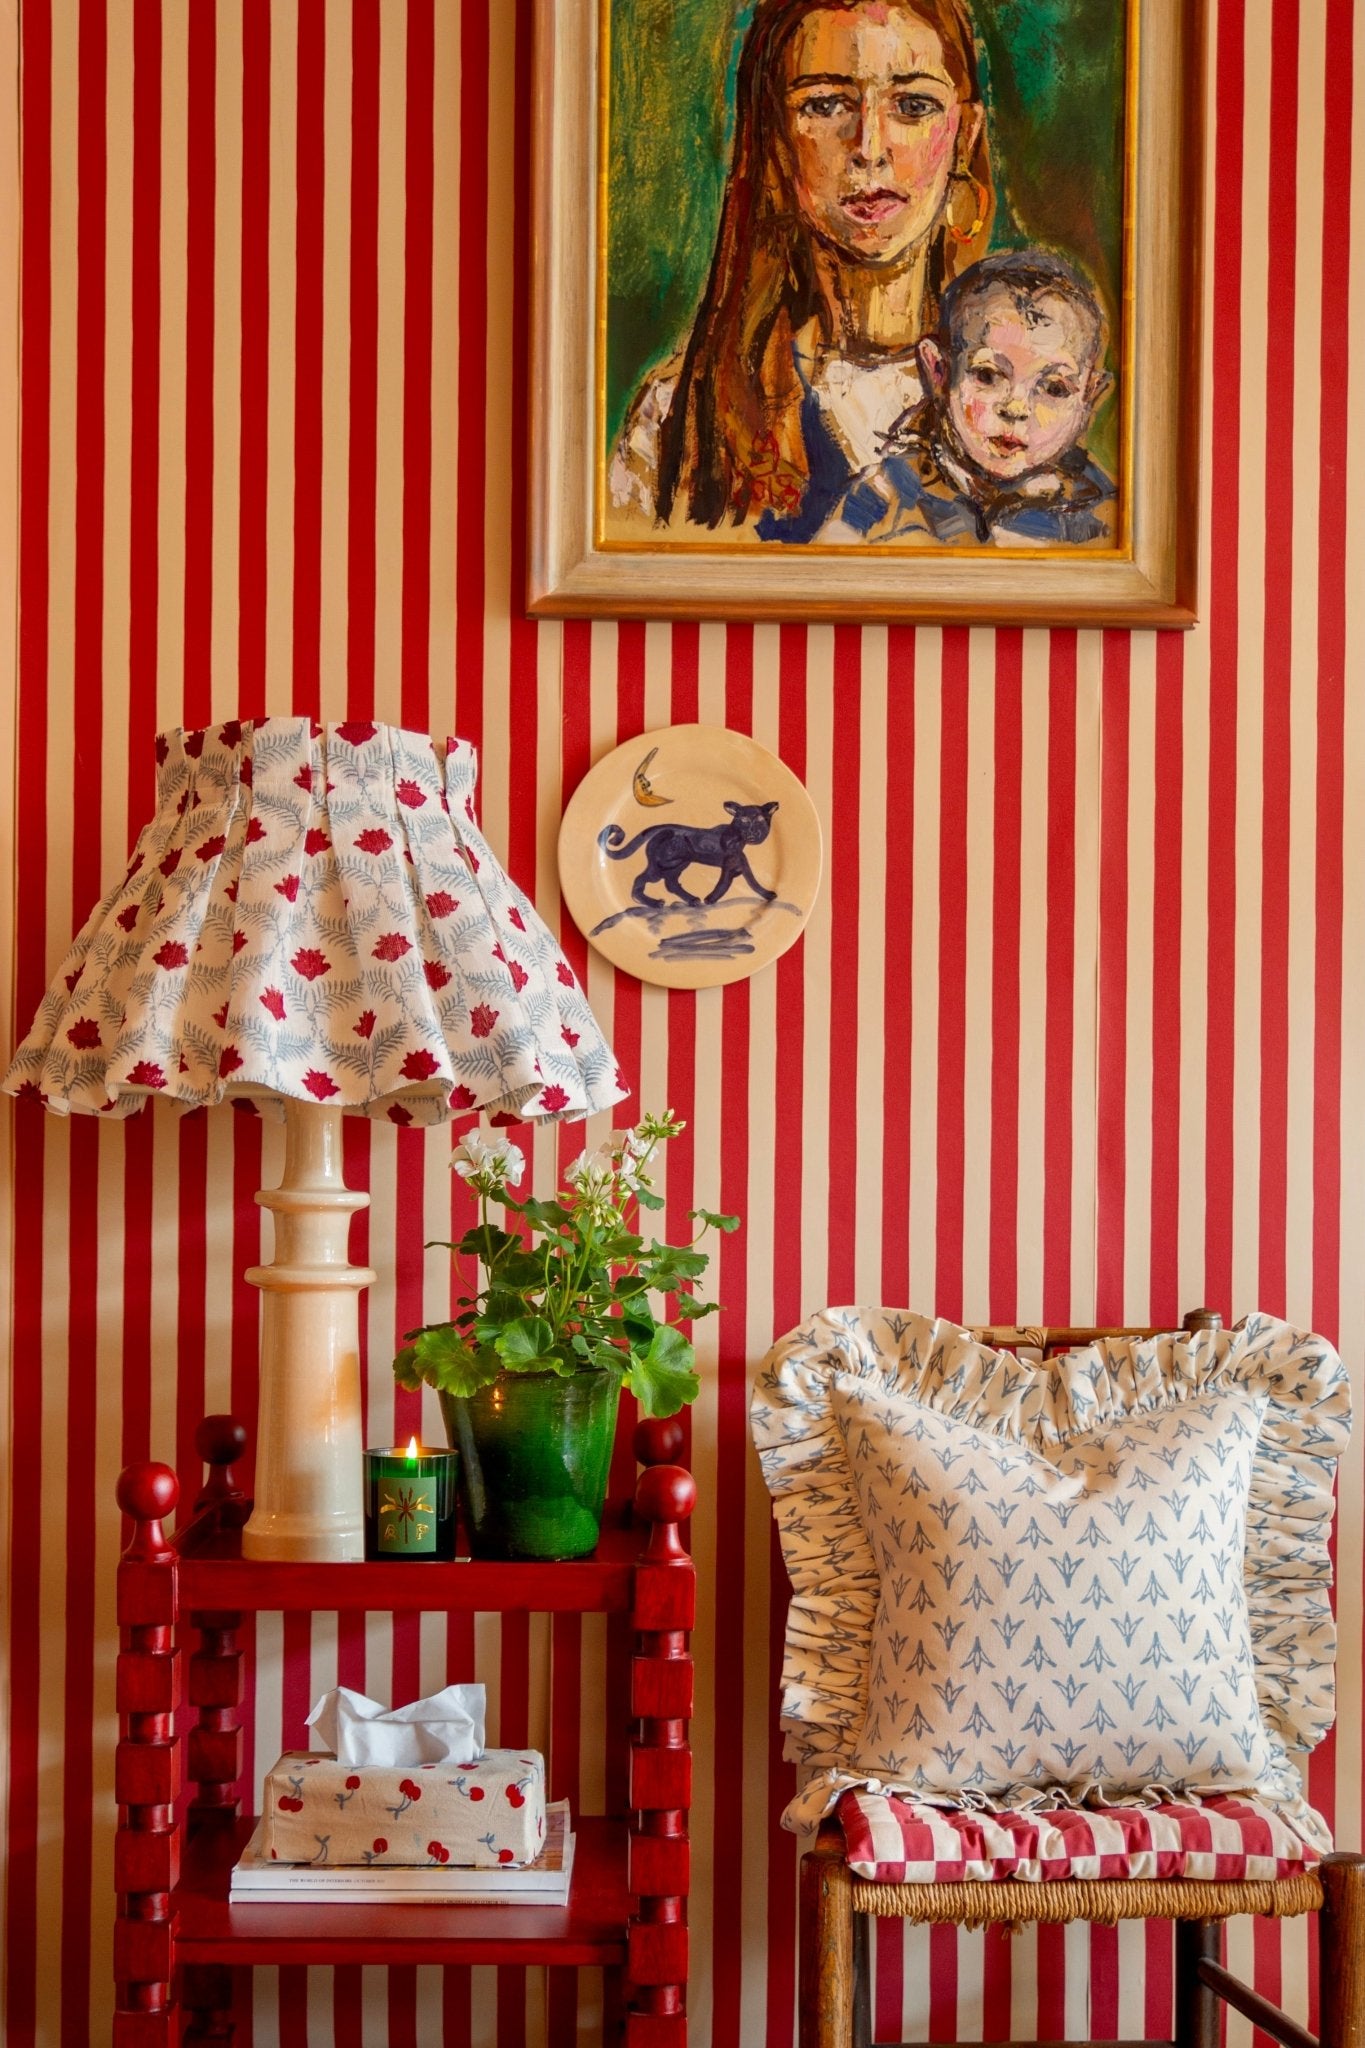 Tangier Red Stripe Wallpaper - Alice Palmer & Co